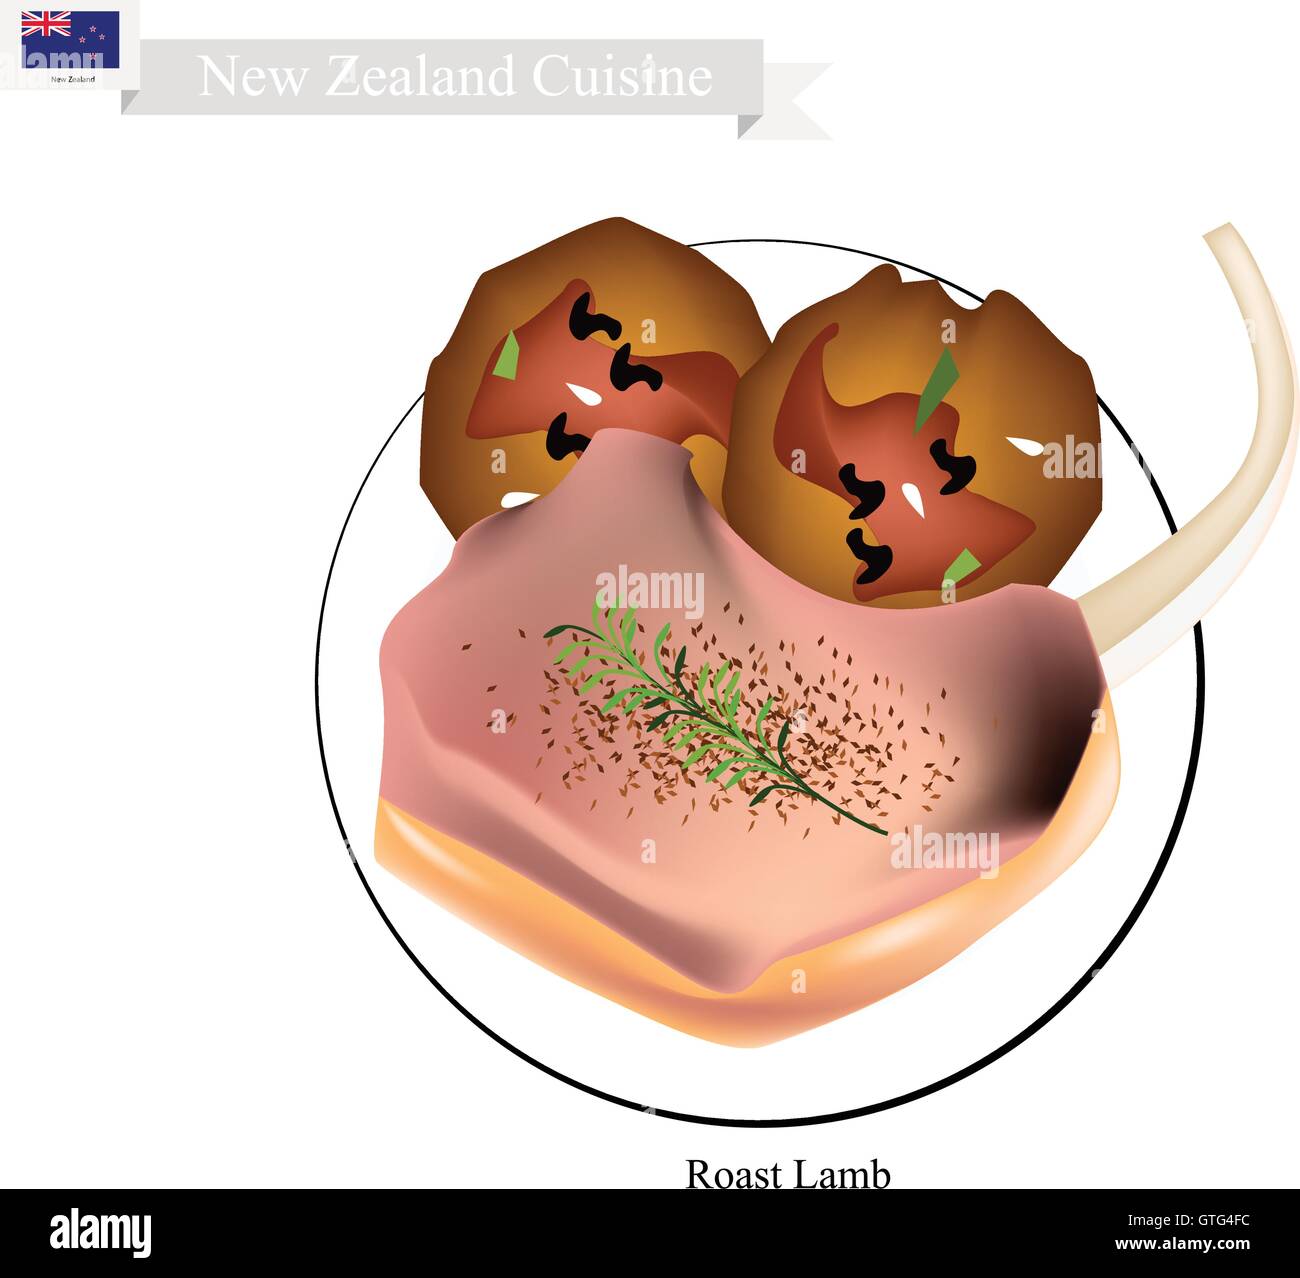 La cuisine néo-zélandaise, Illustration de l'agneau rôti traditionnel Rack avec boulettes de viande. Un plat populaire de la Nouvelle-Zélande. Illustration de Vecteur